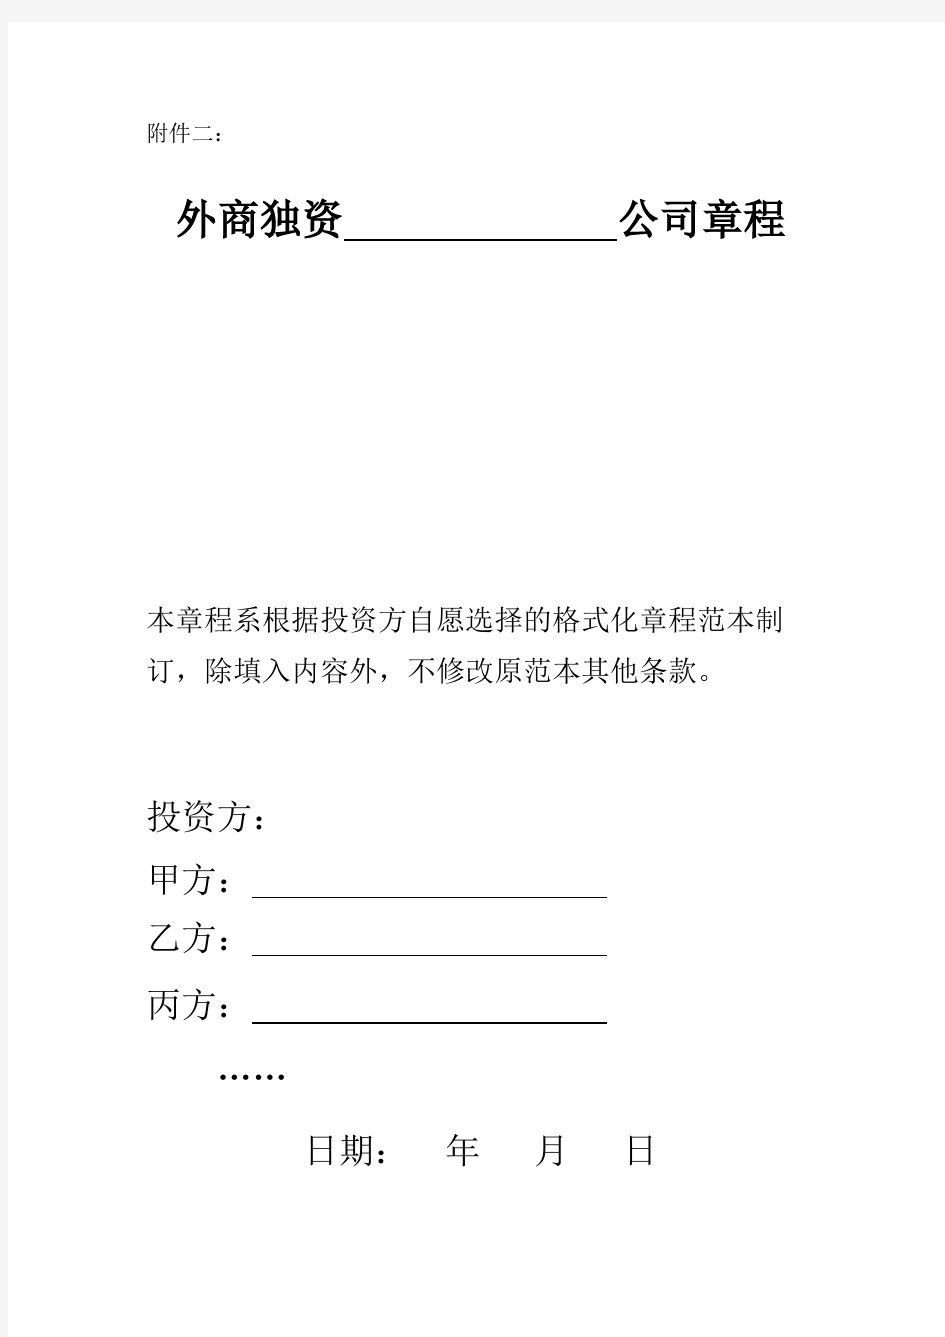 上海市商务委外商独资公司章程示范文本